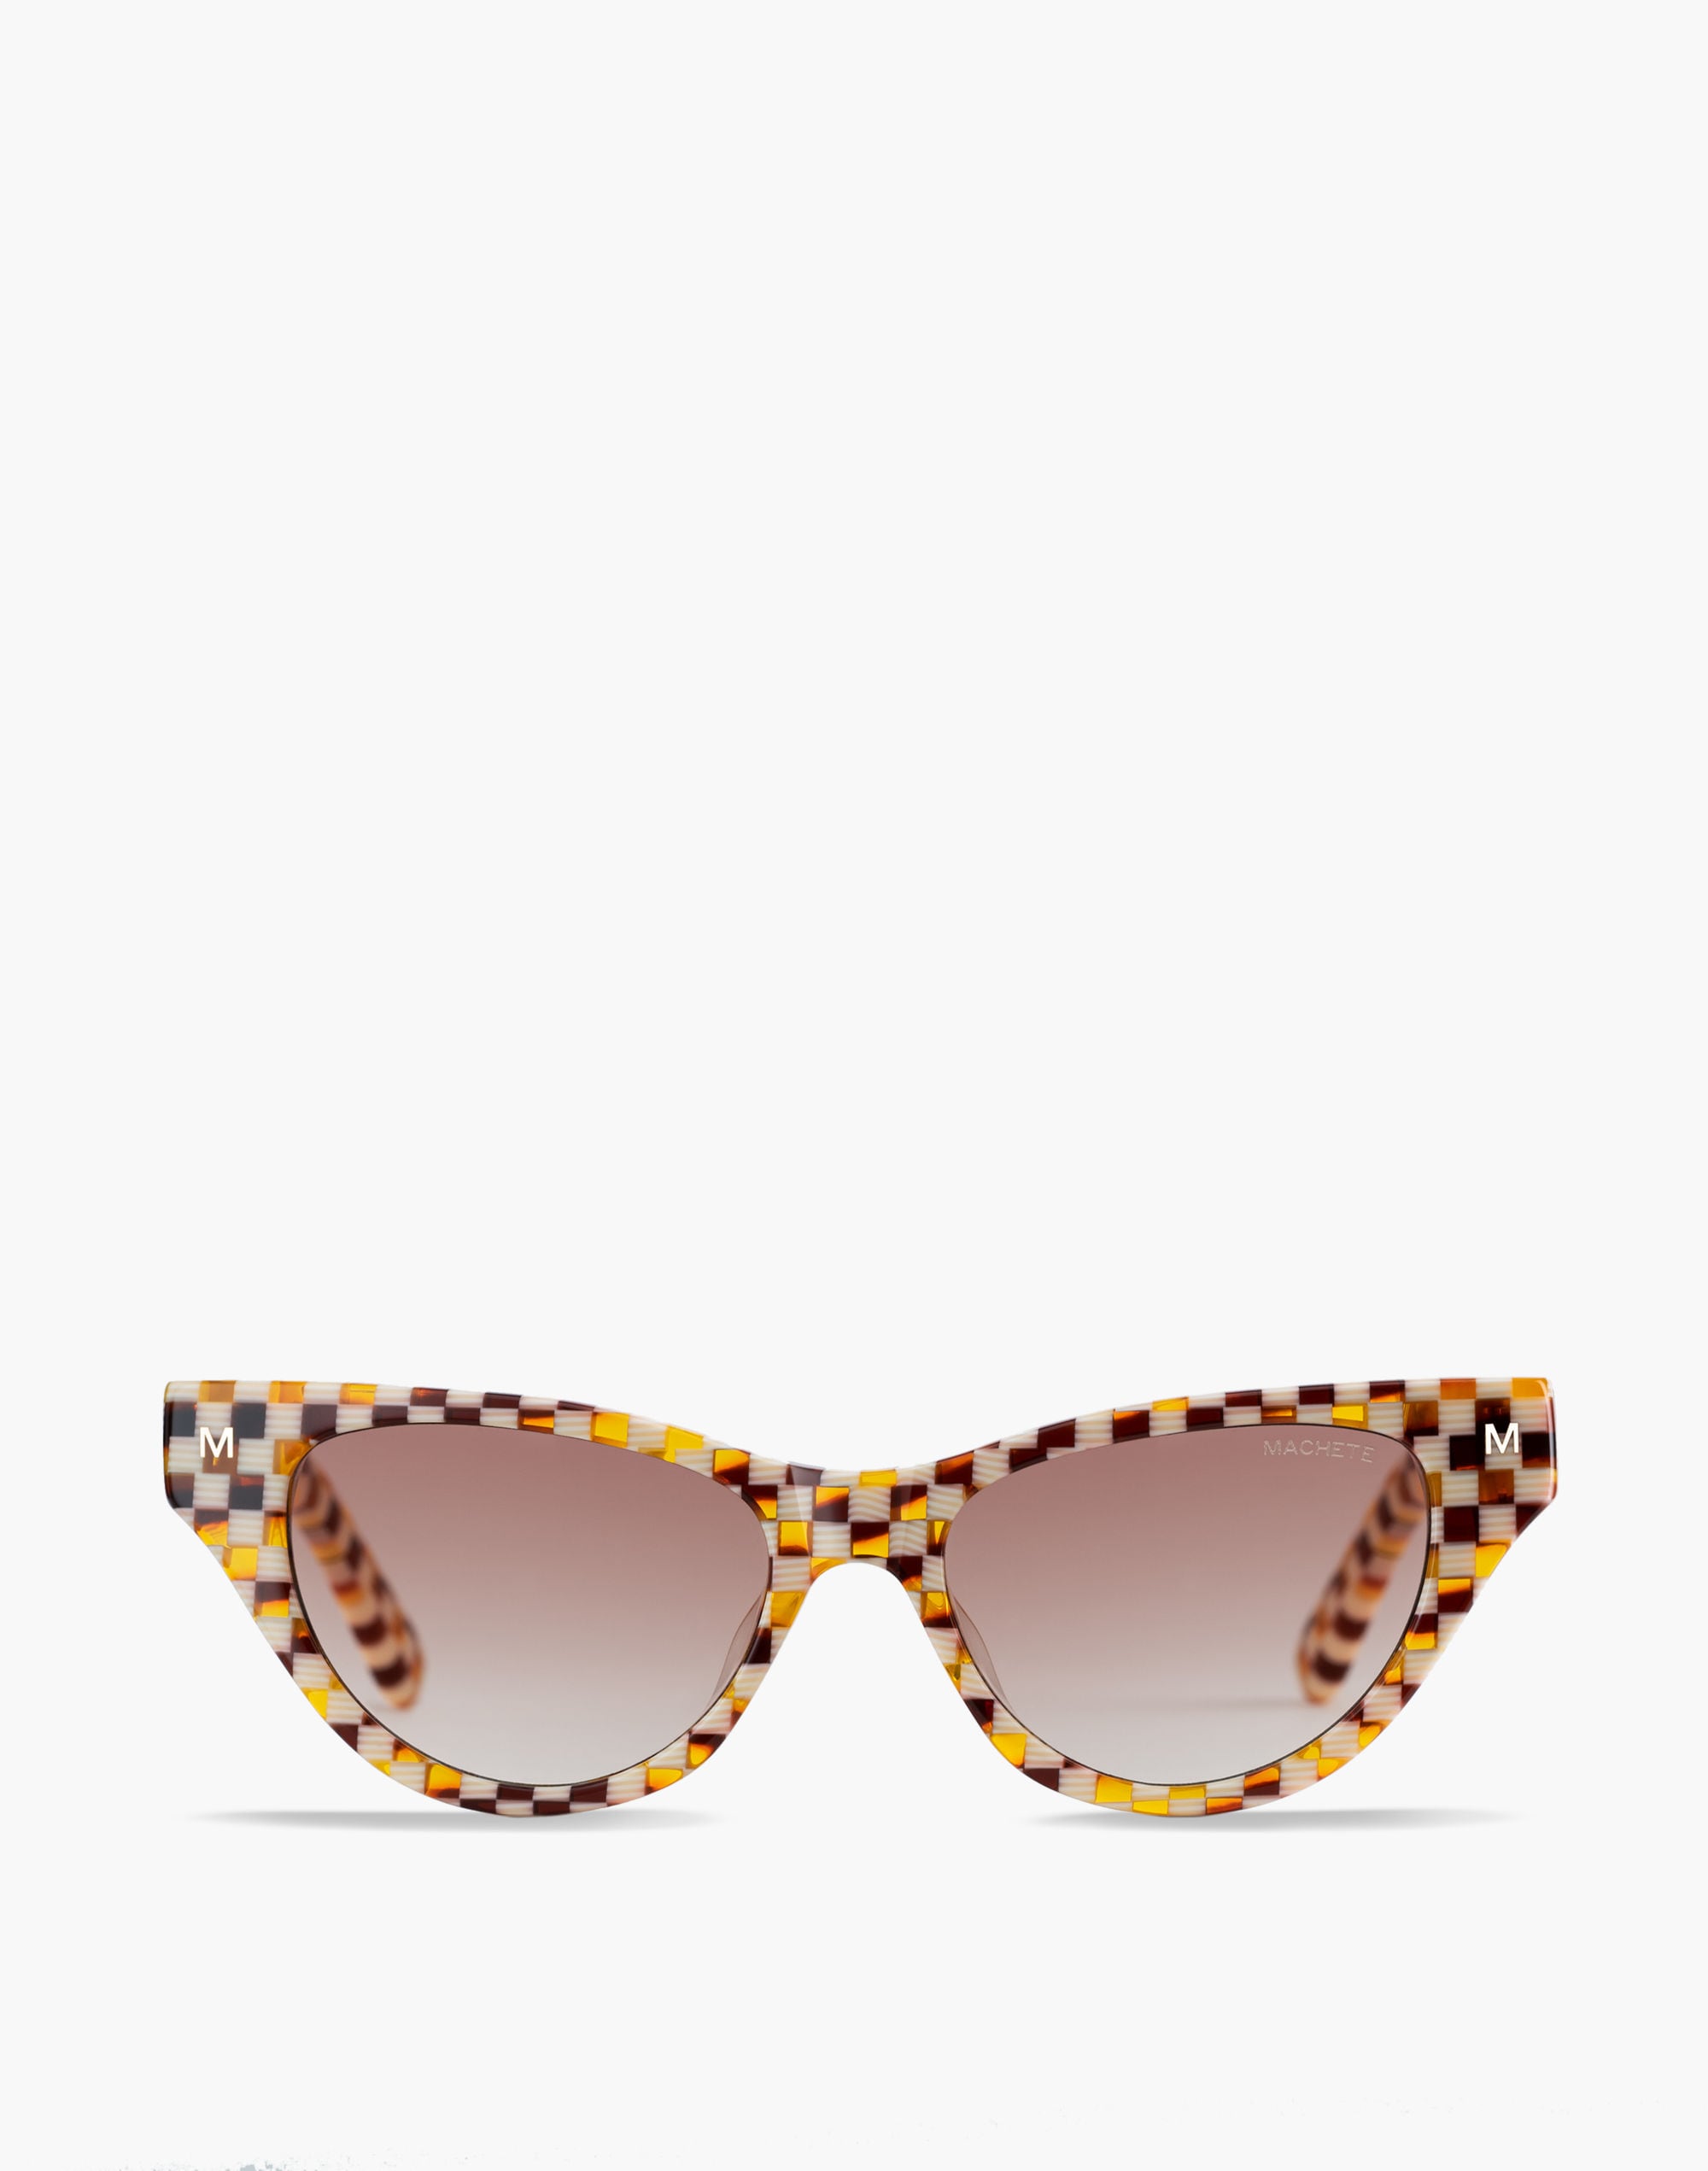 Mw Machete Suzy Sunglasses In Brown Multi